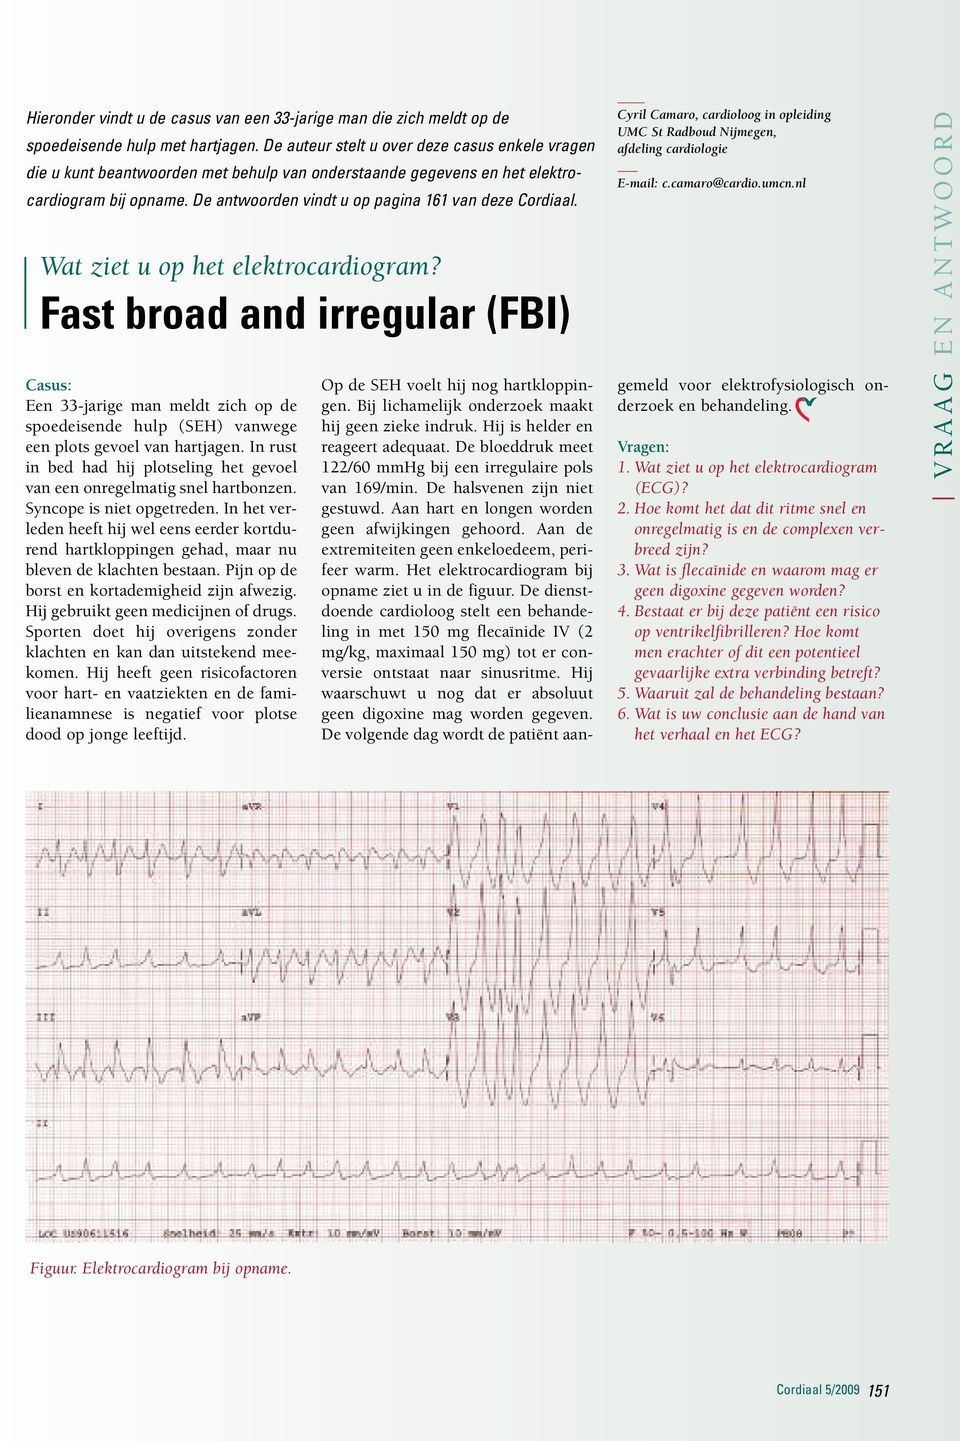 Wat ziet u op het elektrocardiogram? Fast broad and irregular (FBI) Casus: Een 33-jarige man meldt zich op de spoedeisende hulp (SEH) vanwege een plots gevoel van hartjagen.